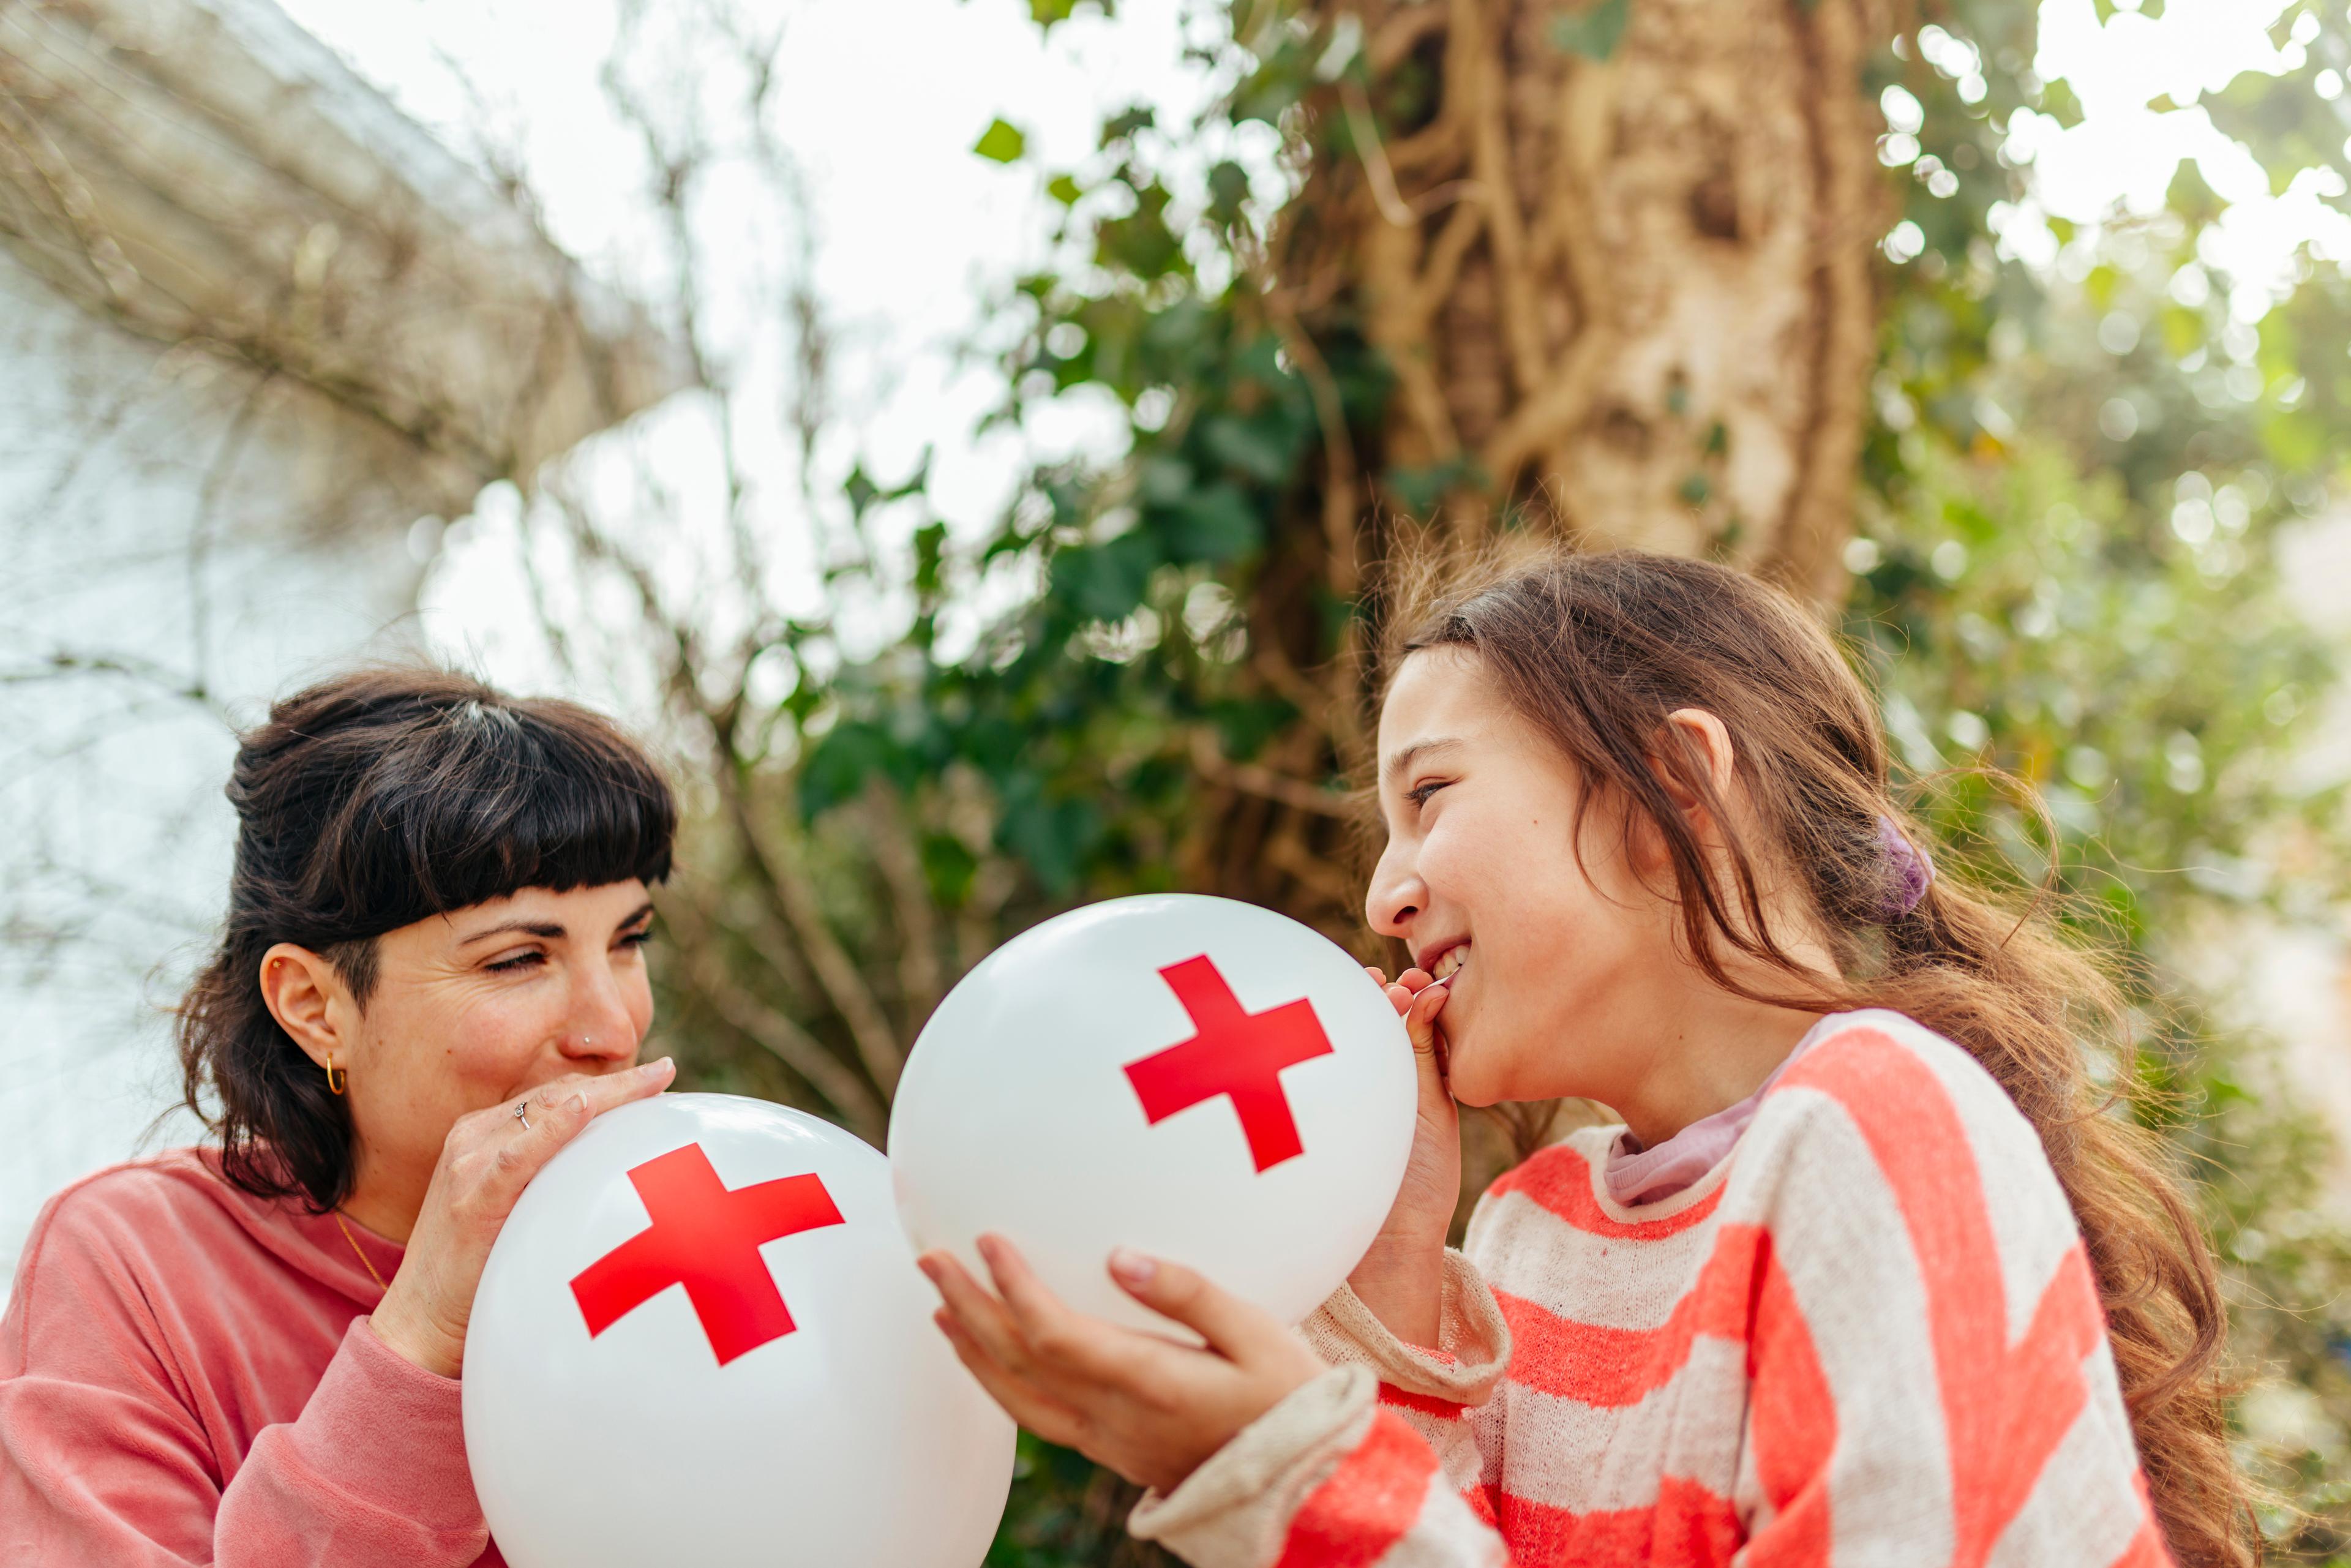 Dans un jardin, une mère et sa fille gonflent des ballons ornés d’une croix rouge.